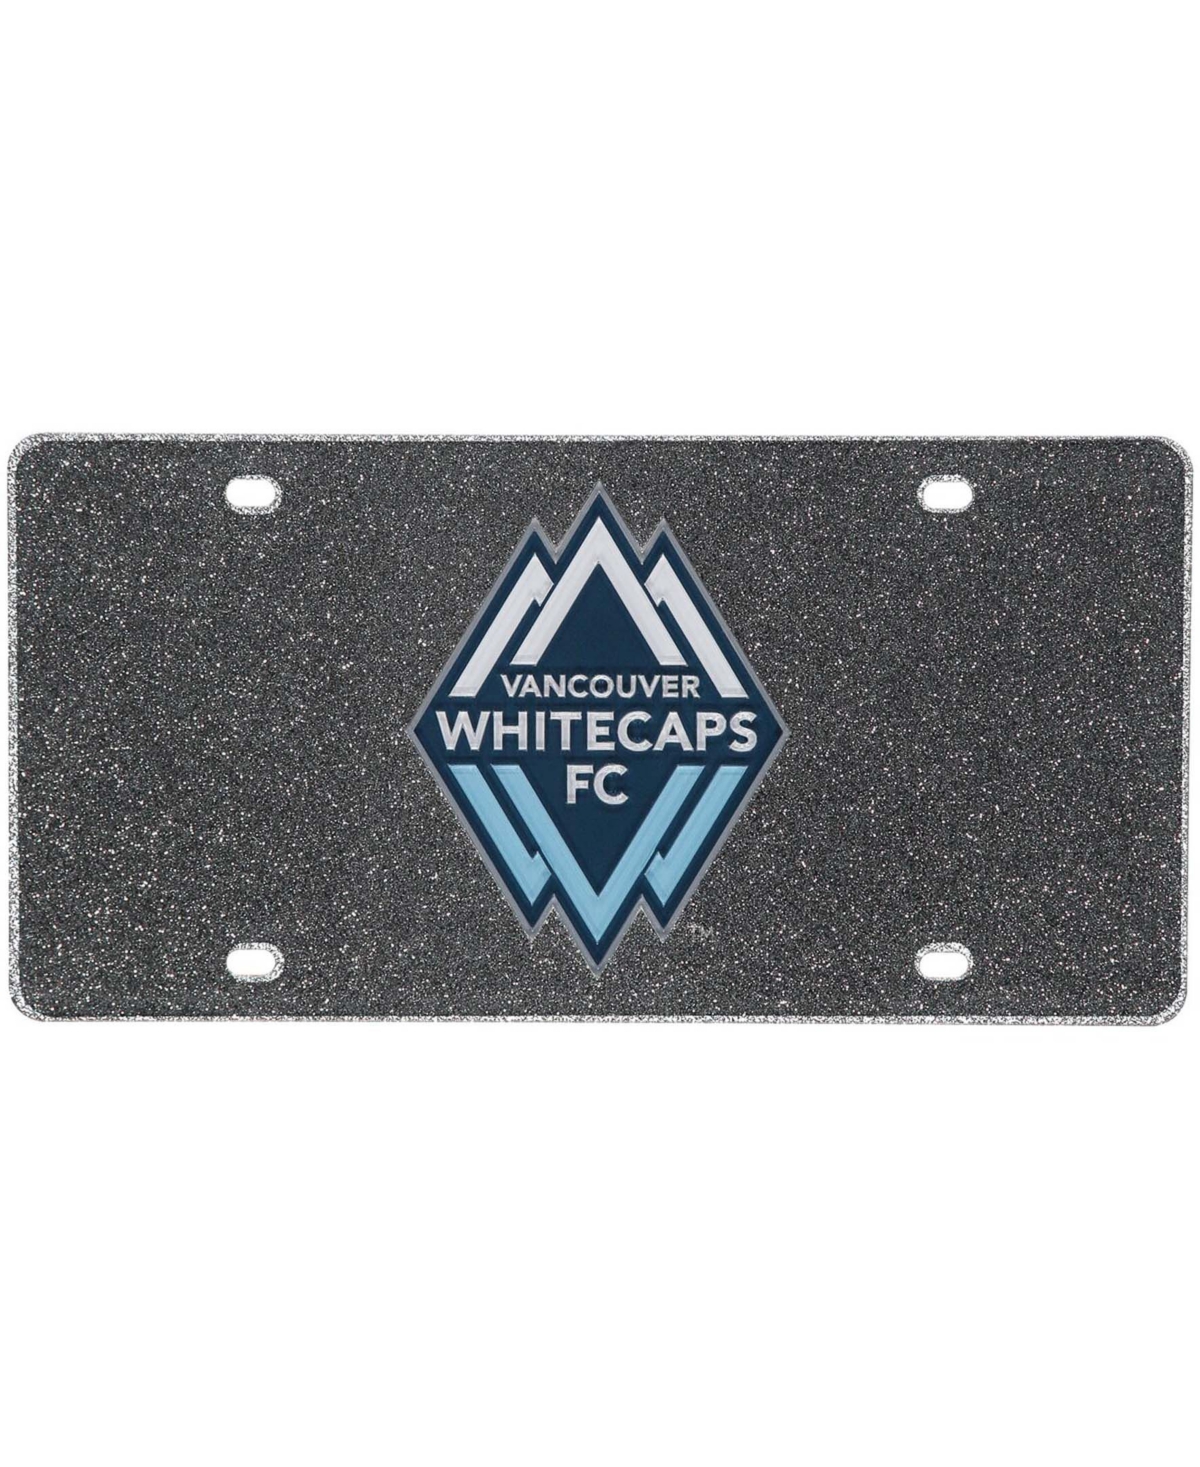 Multi Vancouver Whitecaps Fc Acrylic Glitter License Plate - Multi